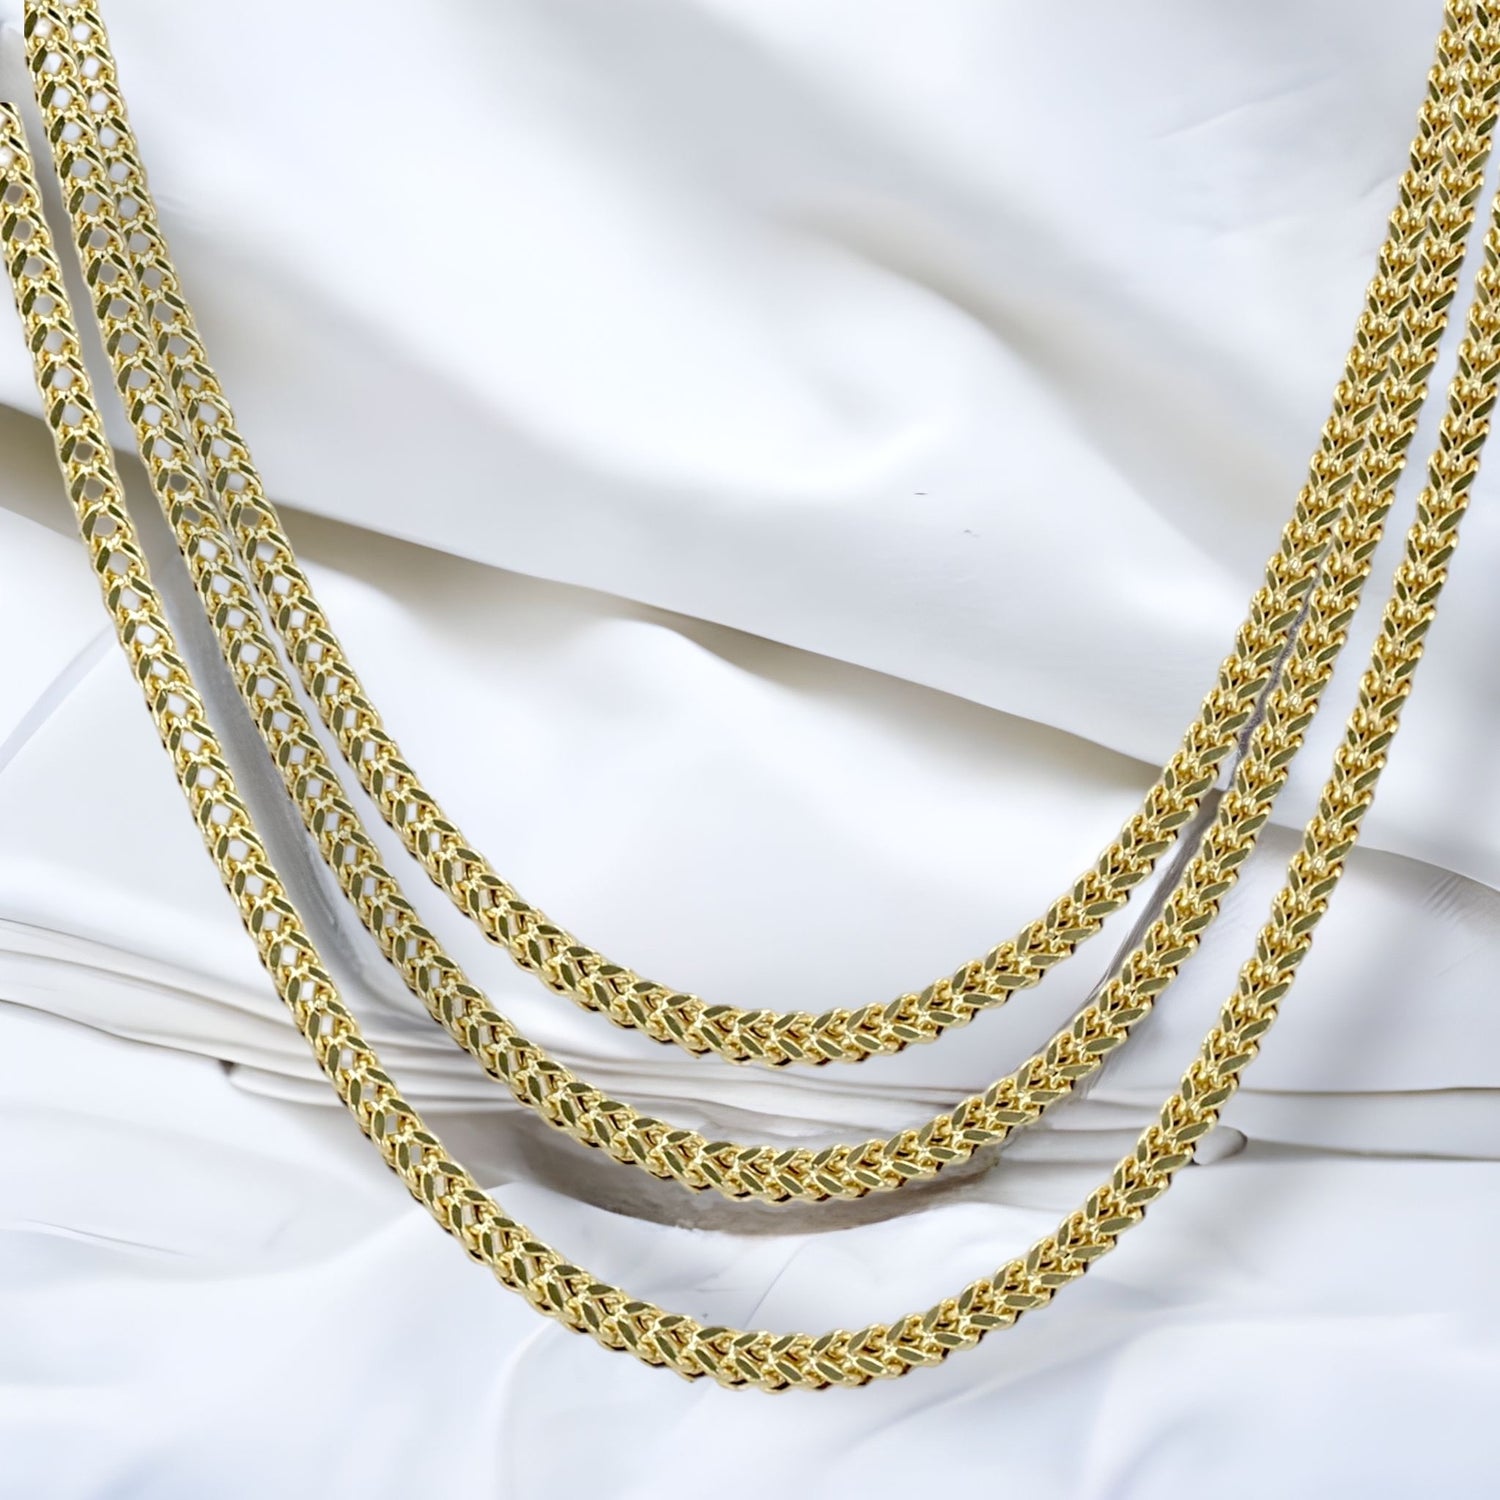 Tienda de joyería fina, joyería diamantes, de oro y Plata – Aldo Jewelry